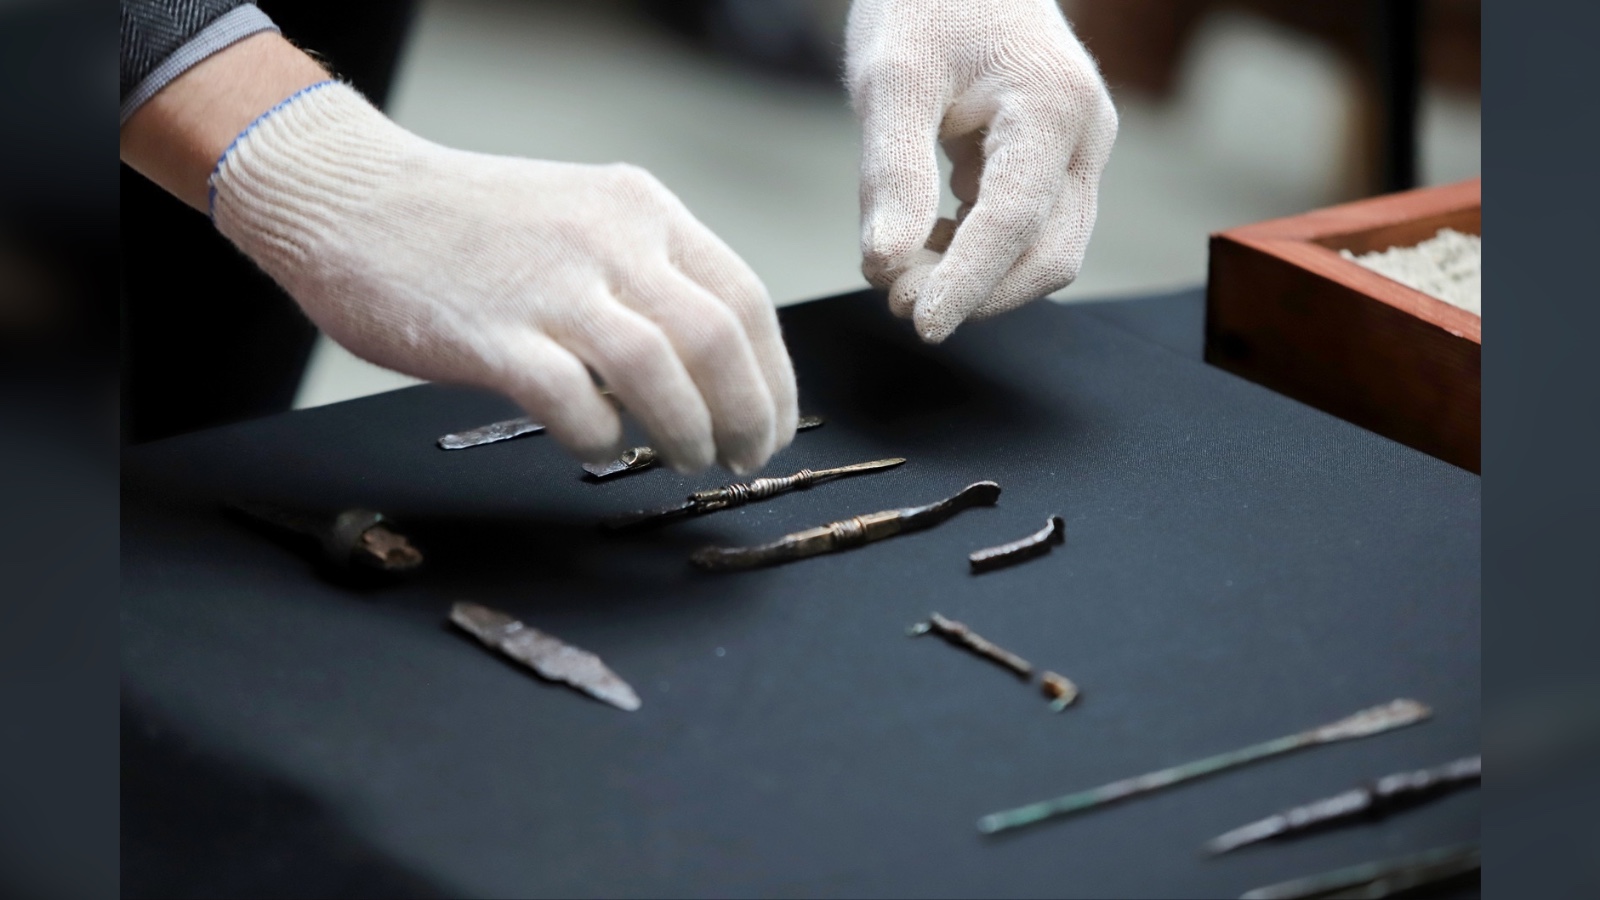 Aquí vemos un par de manos enguantadas manipulando con cuidado los escalpelos de la época romana.